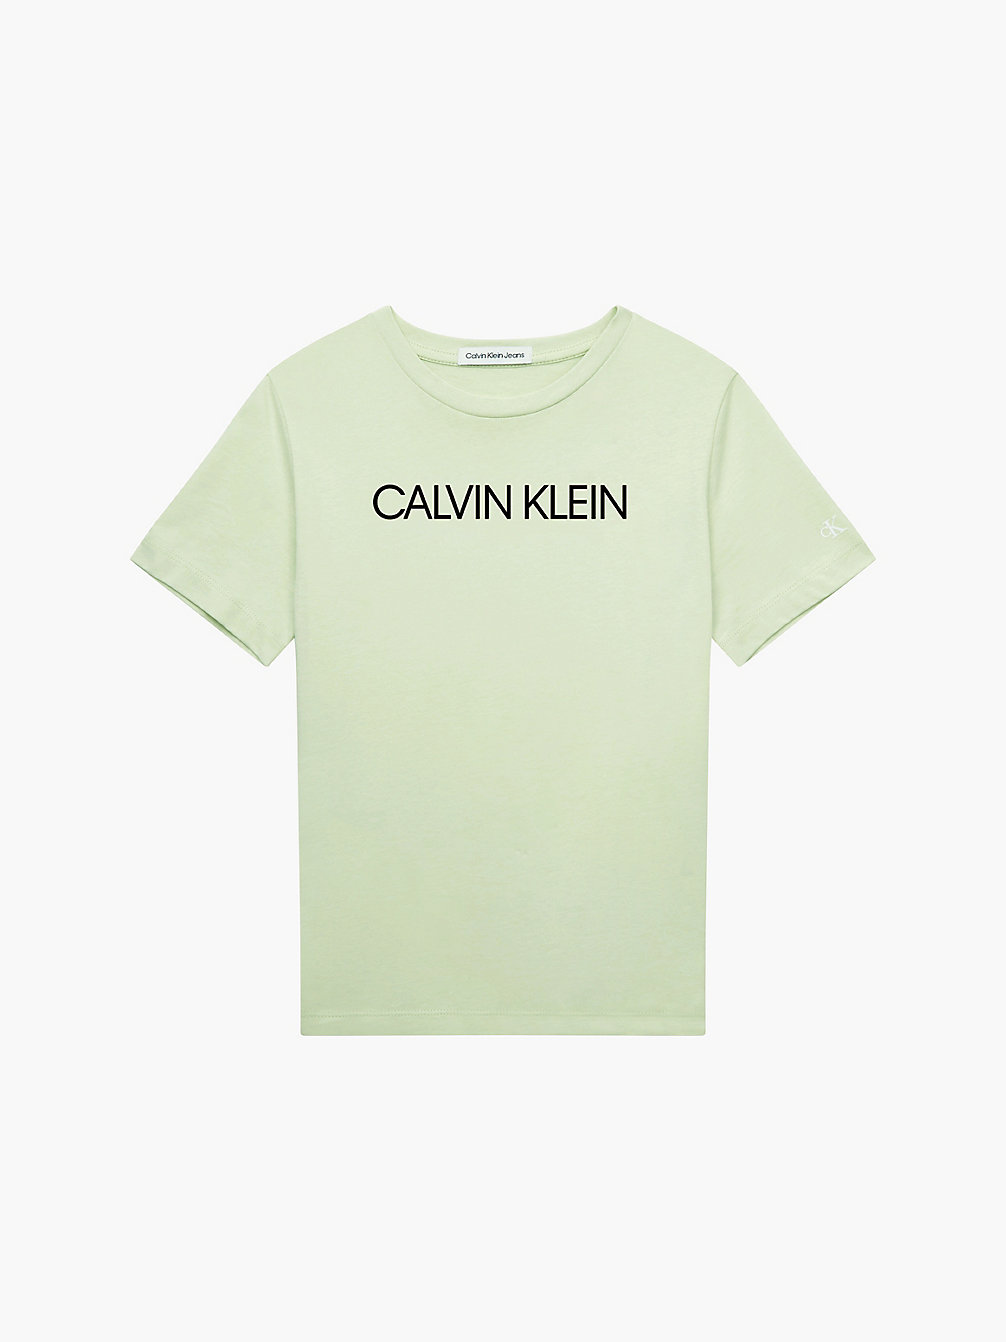 T-Shirt En Coton Bio Avec Logo Pour Enfant > SEAFOAM GREEN > undefined kids unisex > Calvin Klein